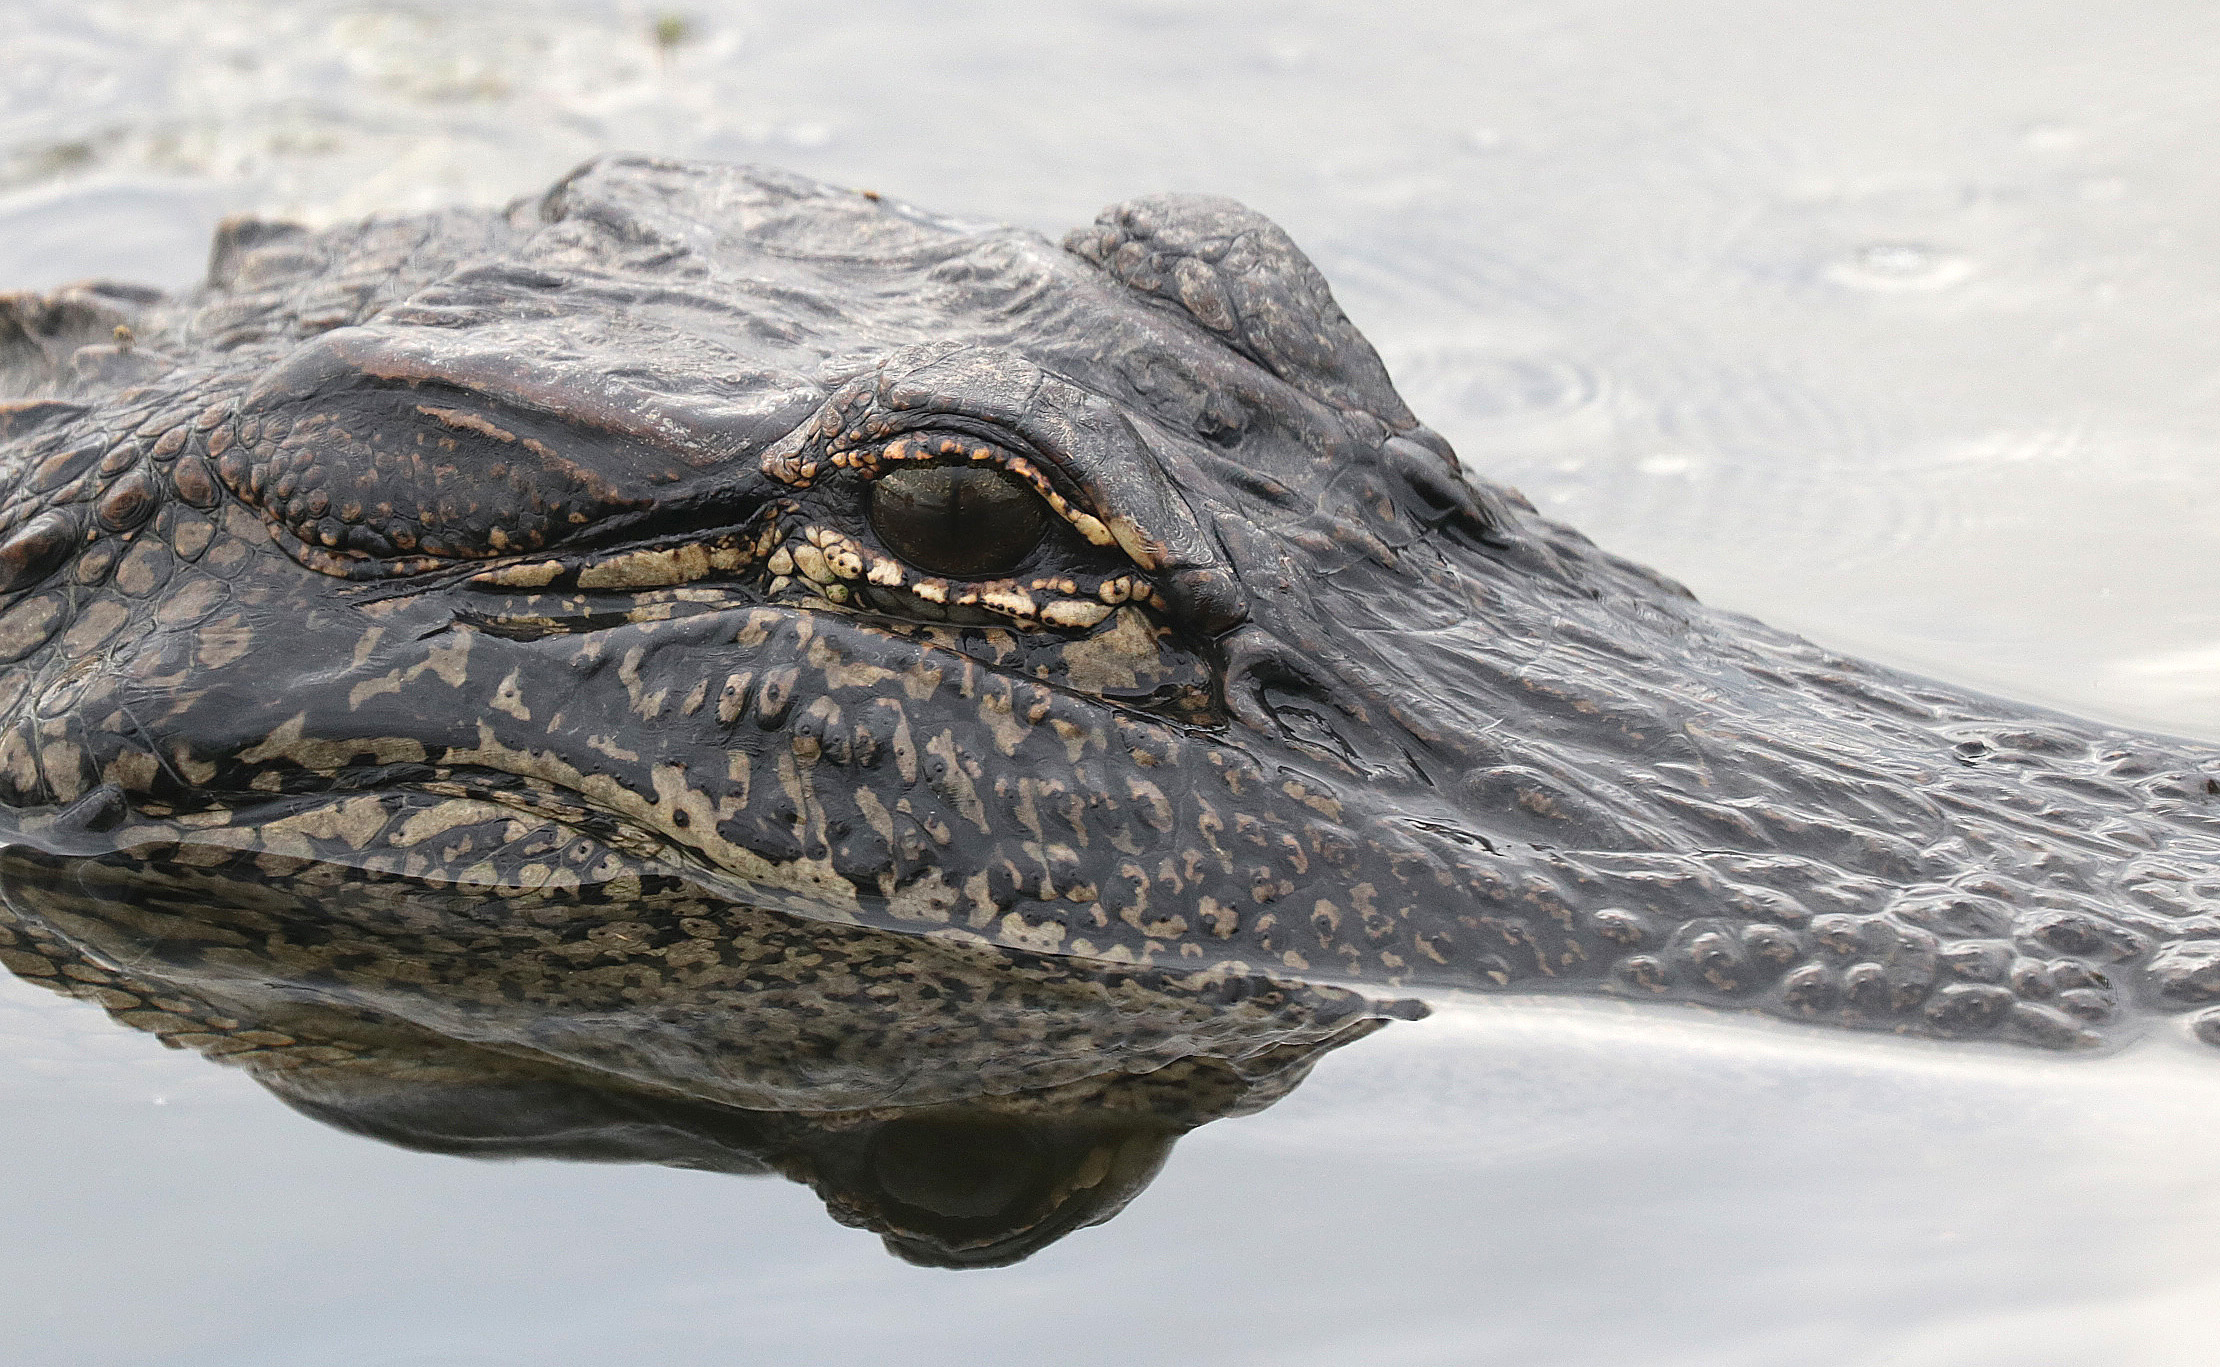 American alligator by Alan Schmierer